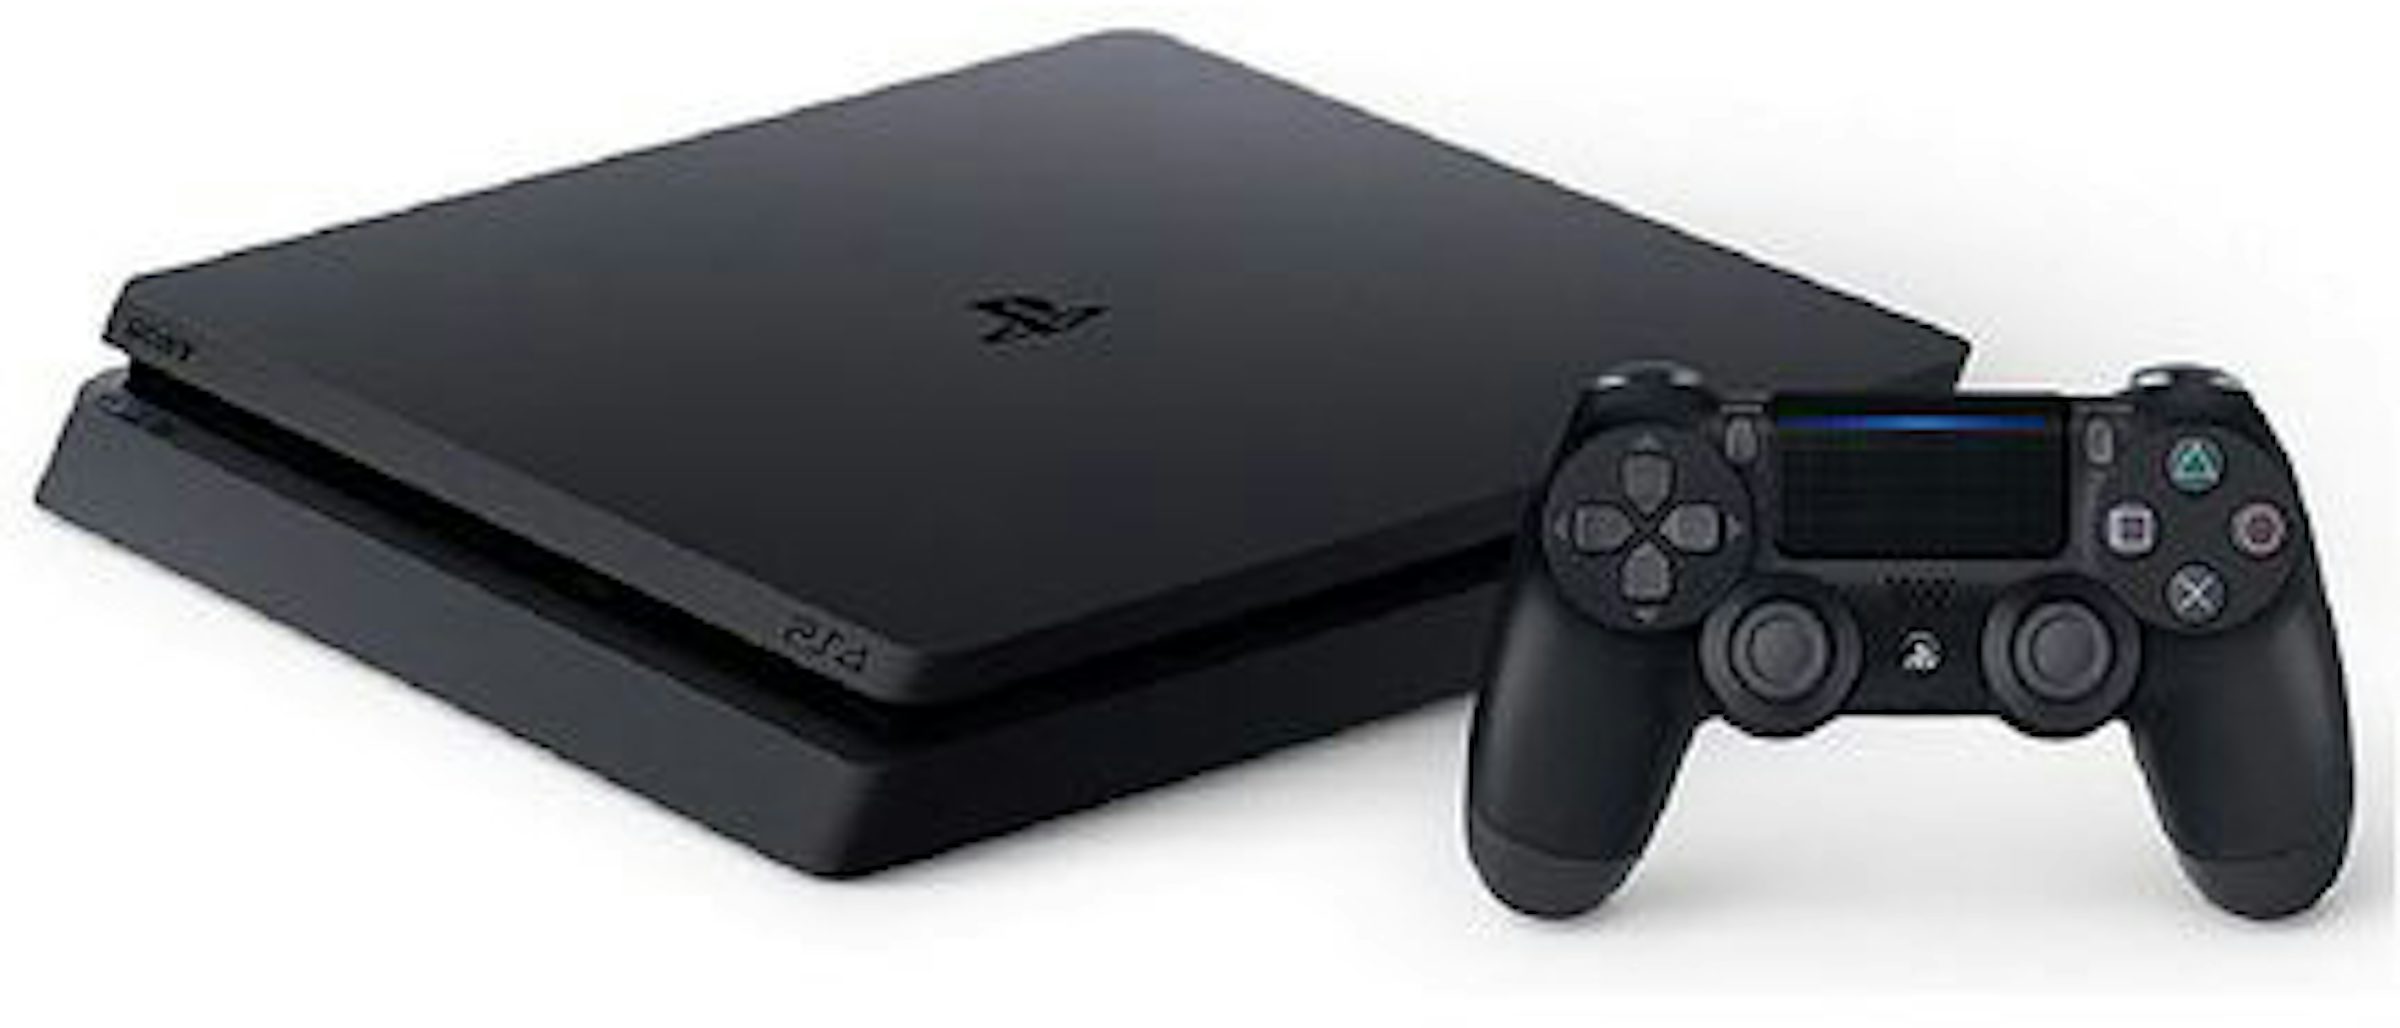 Preços baixos em Sony PlayStation 4 Slim Branco Consoles de videogame